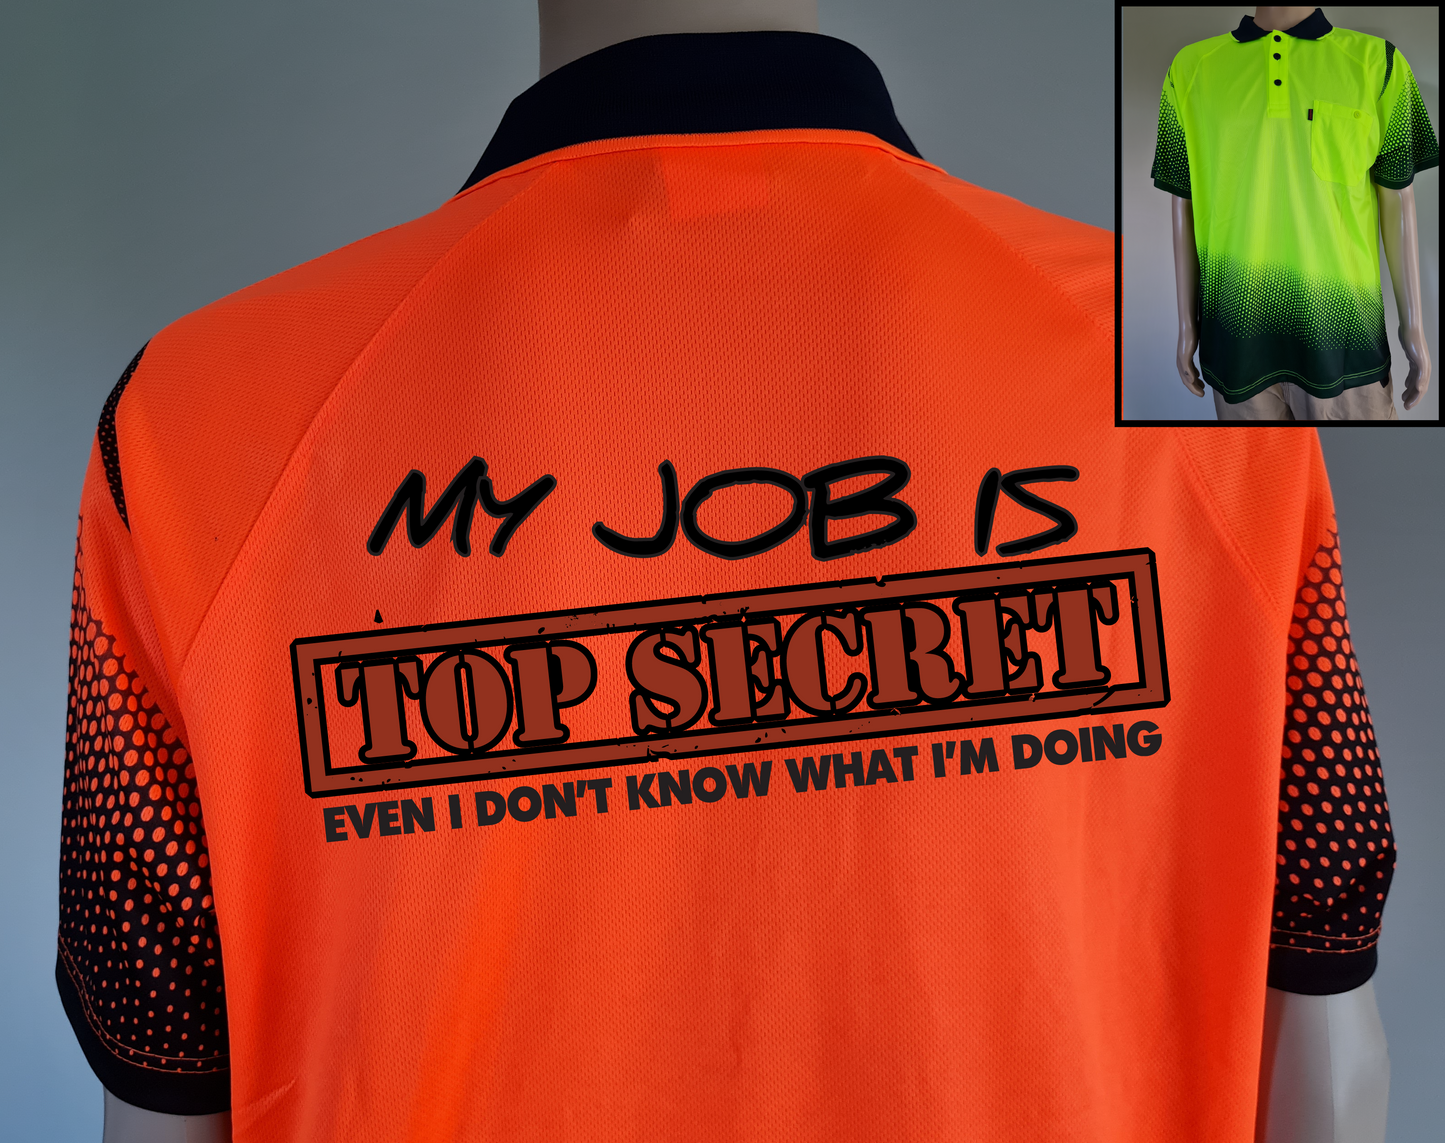 Top Secret Job